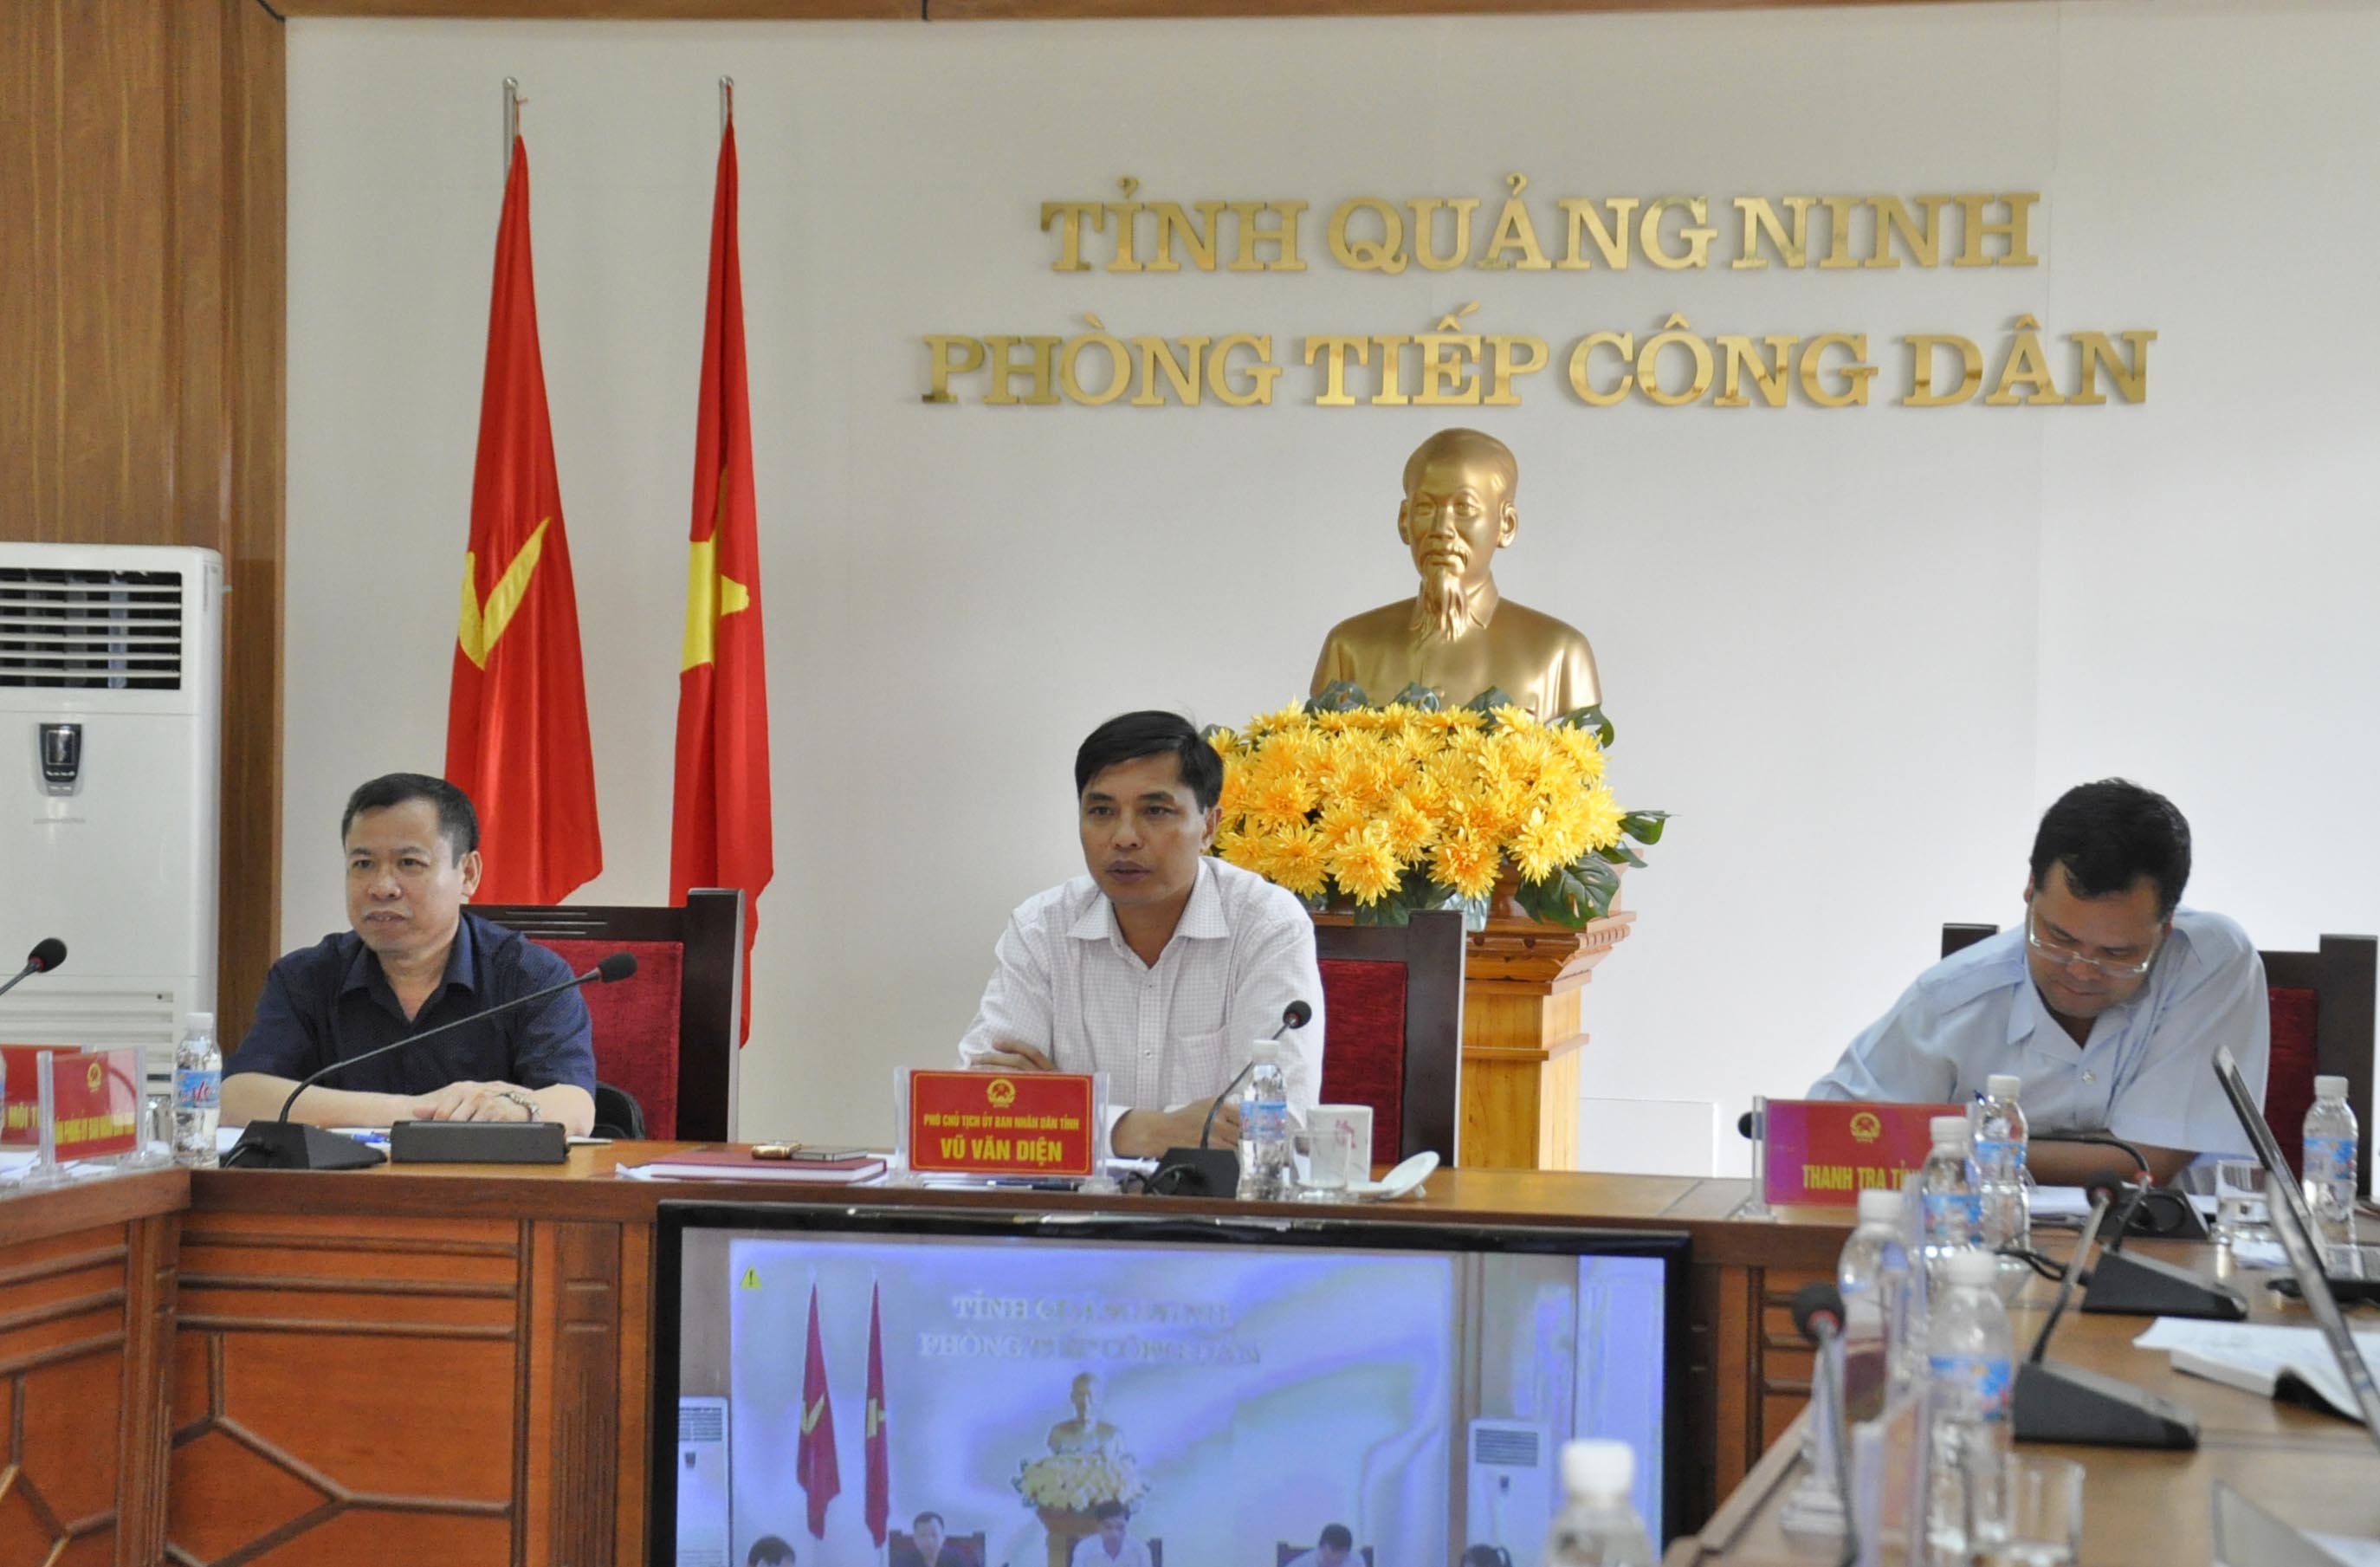 Đồng chí Vũ Văn Diện, Phó Chủ tịch UBND tỉnh chỉ đạo cụ thể giải quyết các vụ việc tại buổi tiếp công dân thường kỳ tháng 5- 2017